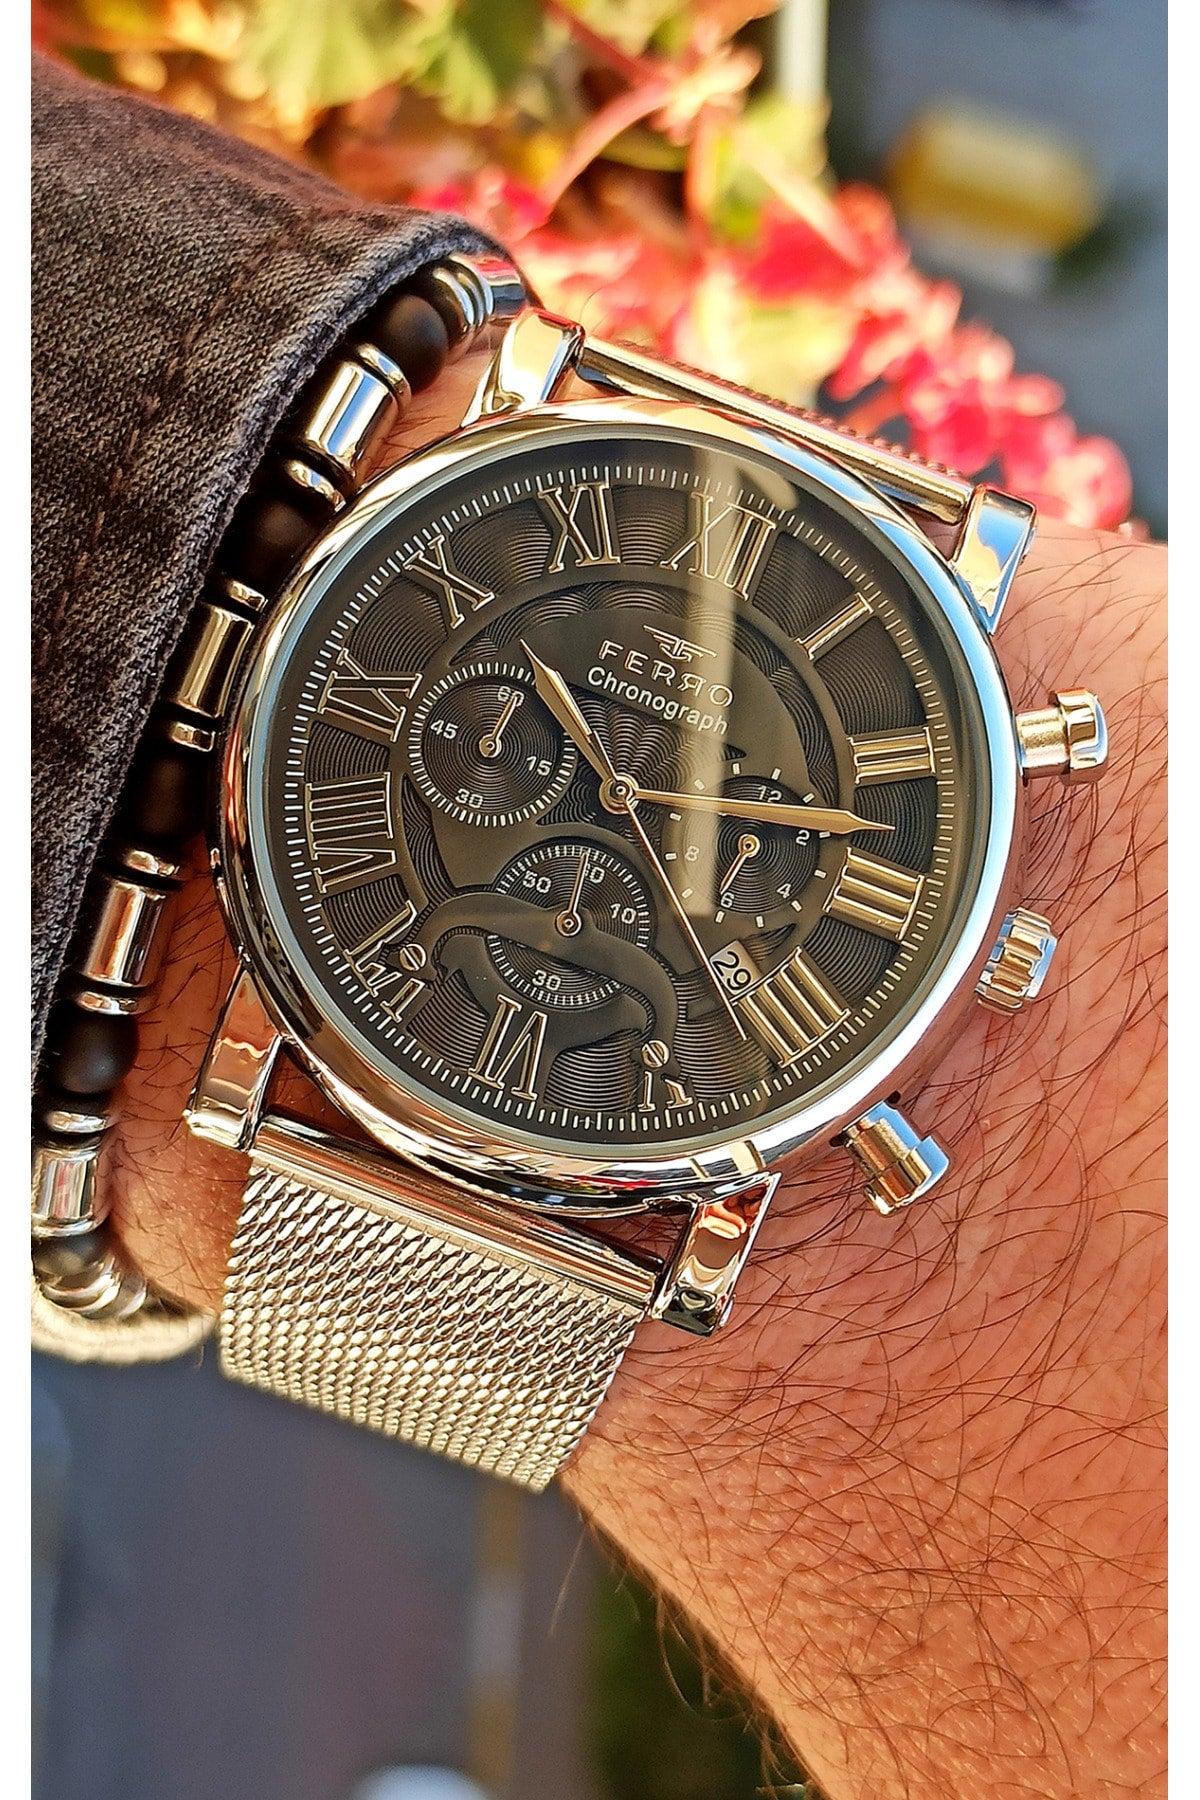 Chronograph Functions Active Silver Men's Wristwatch+bracelet